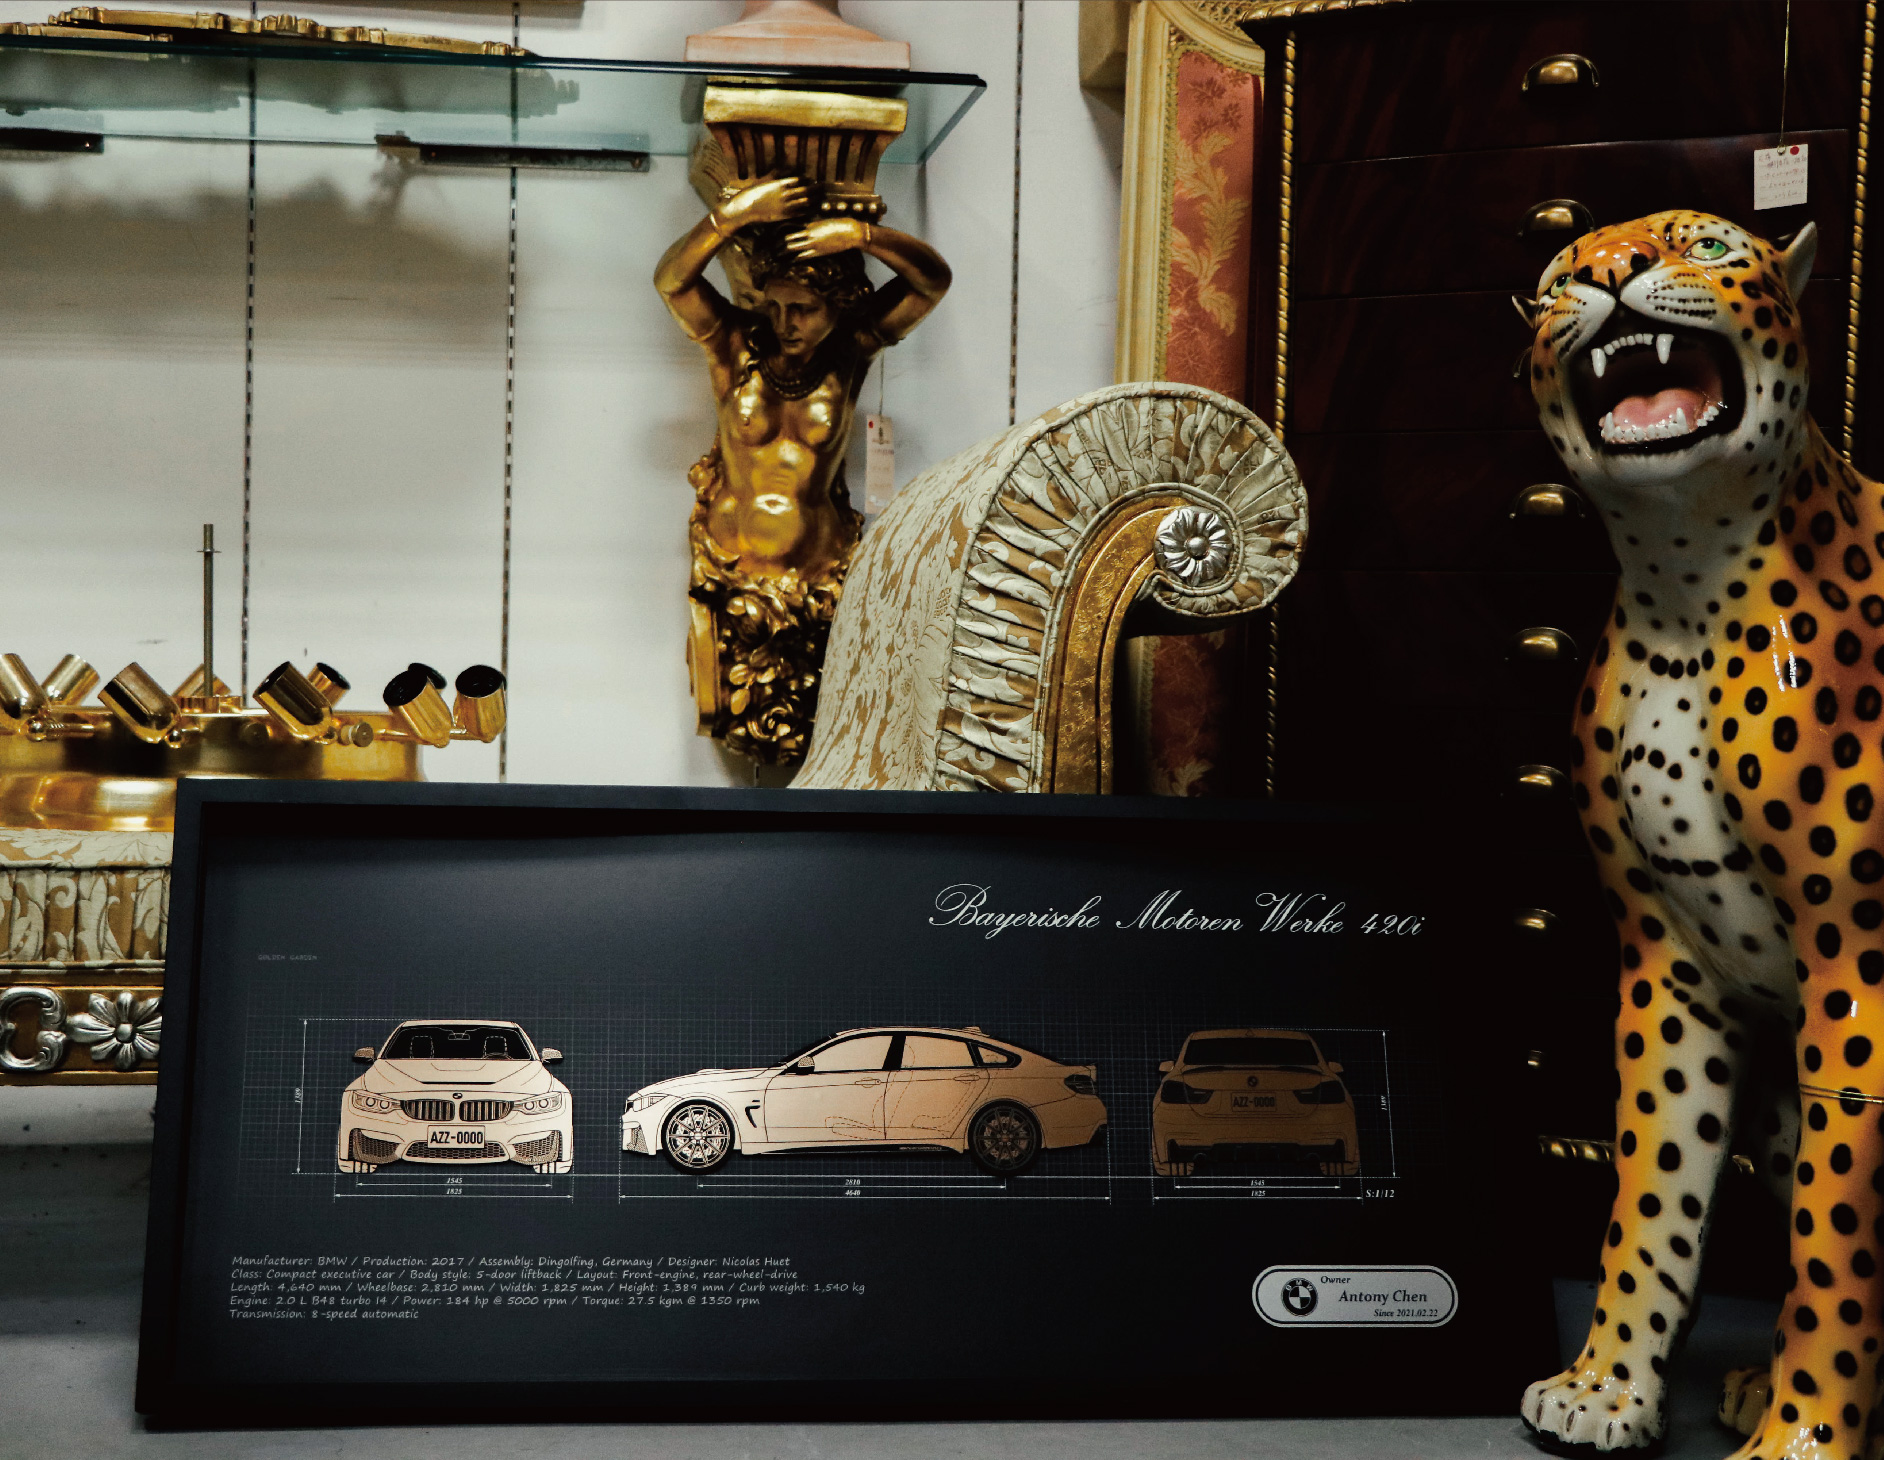 Louis Vuitton and Gucci jaguar statues